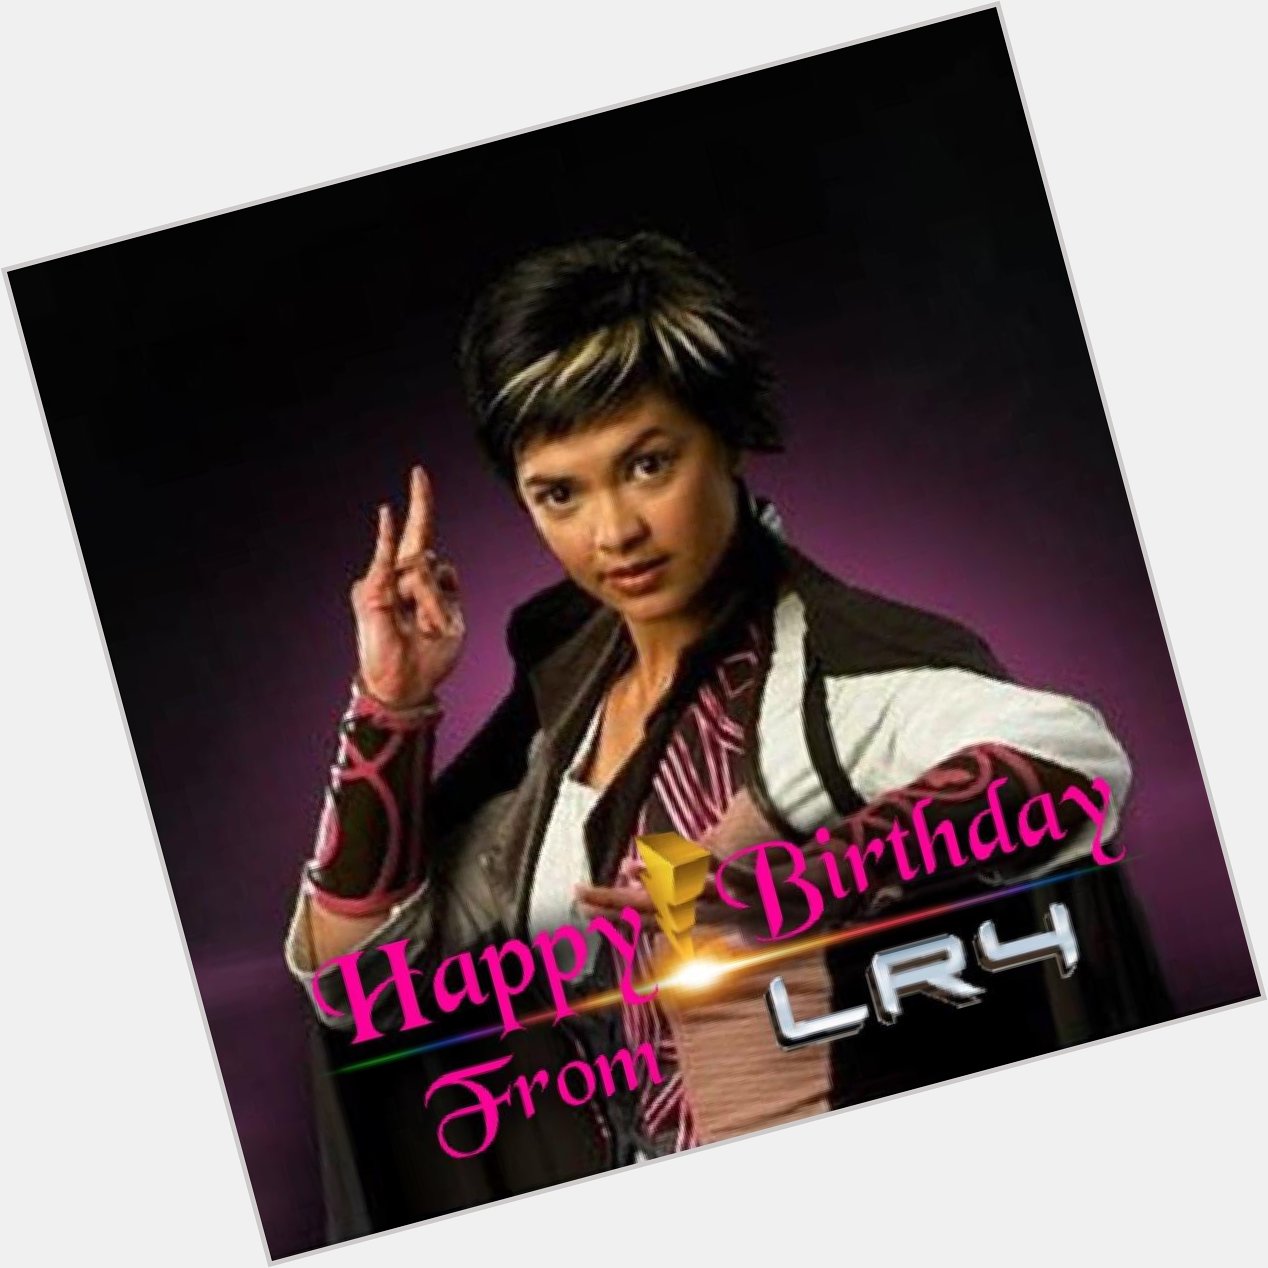 LR4 would like to wish Angie Diaz a Happy Birthday! 